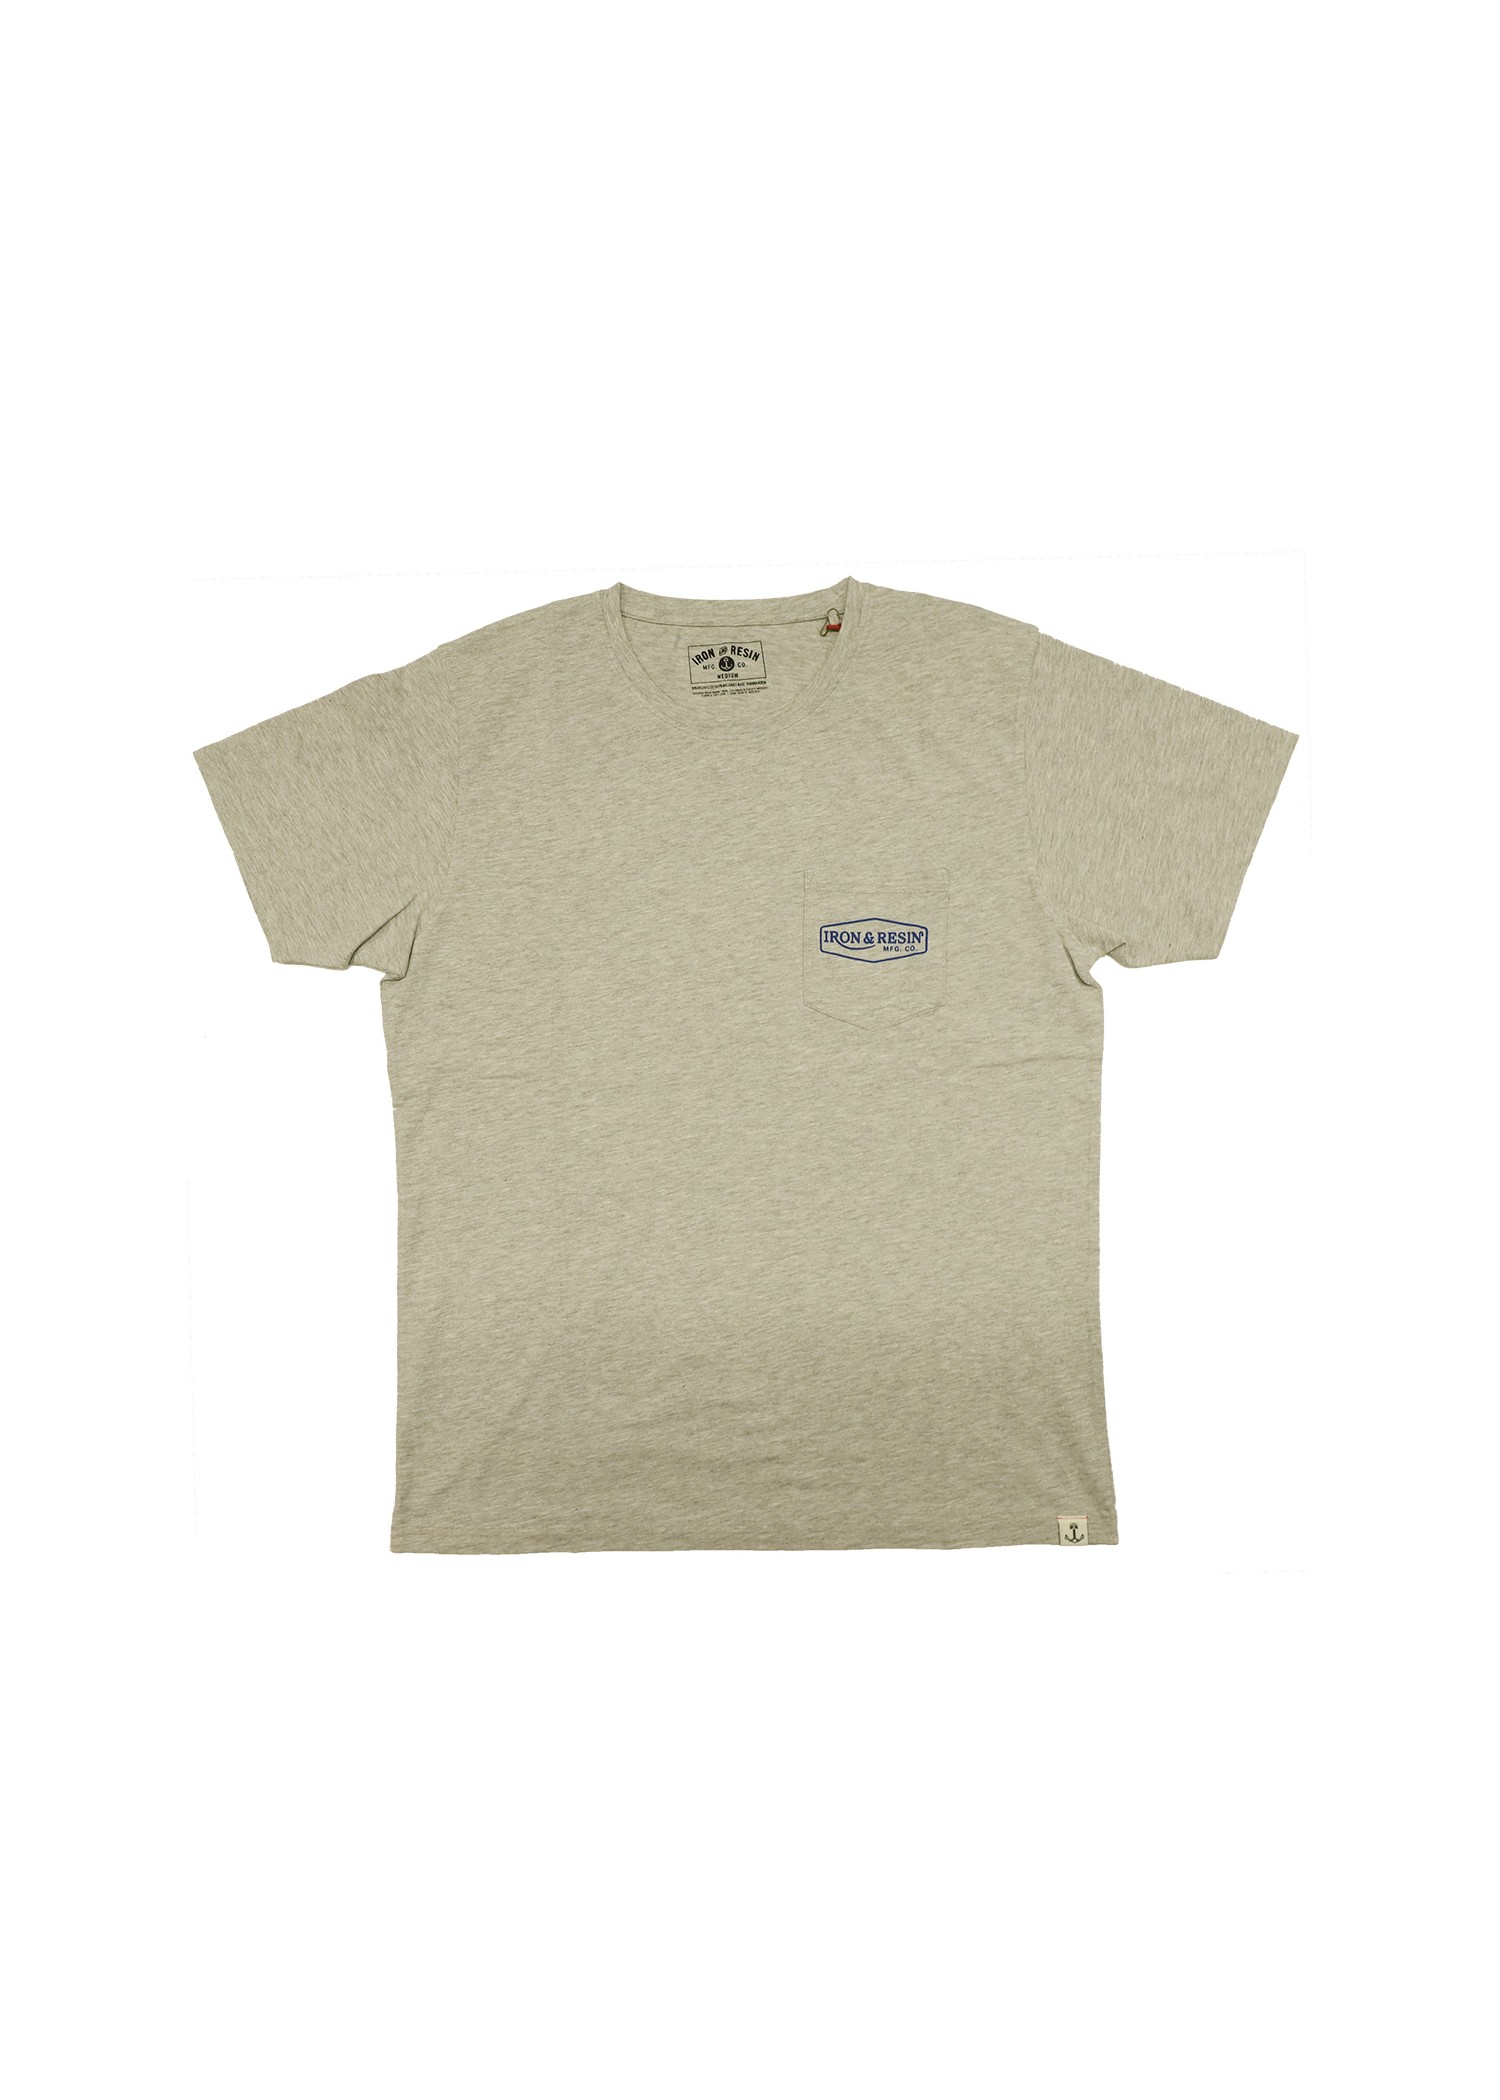 Craftsman - T-shirt textile homme - Accueil